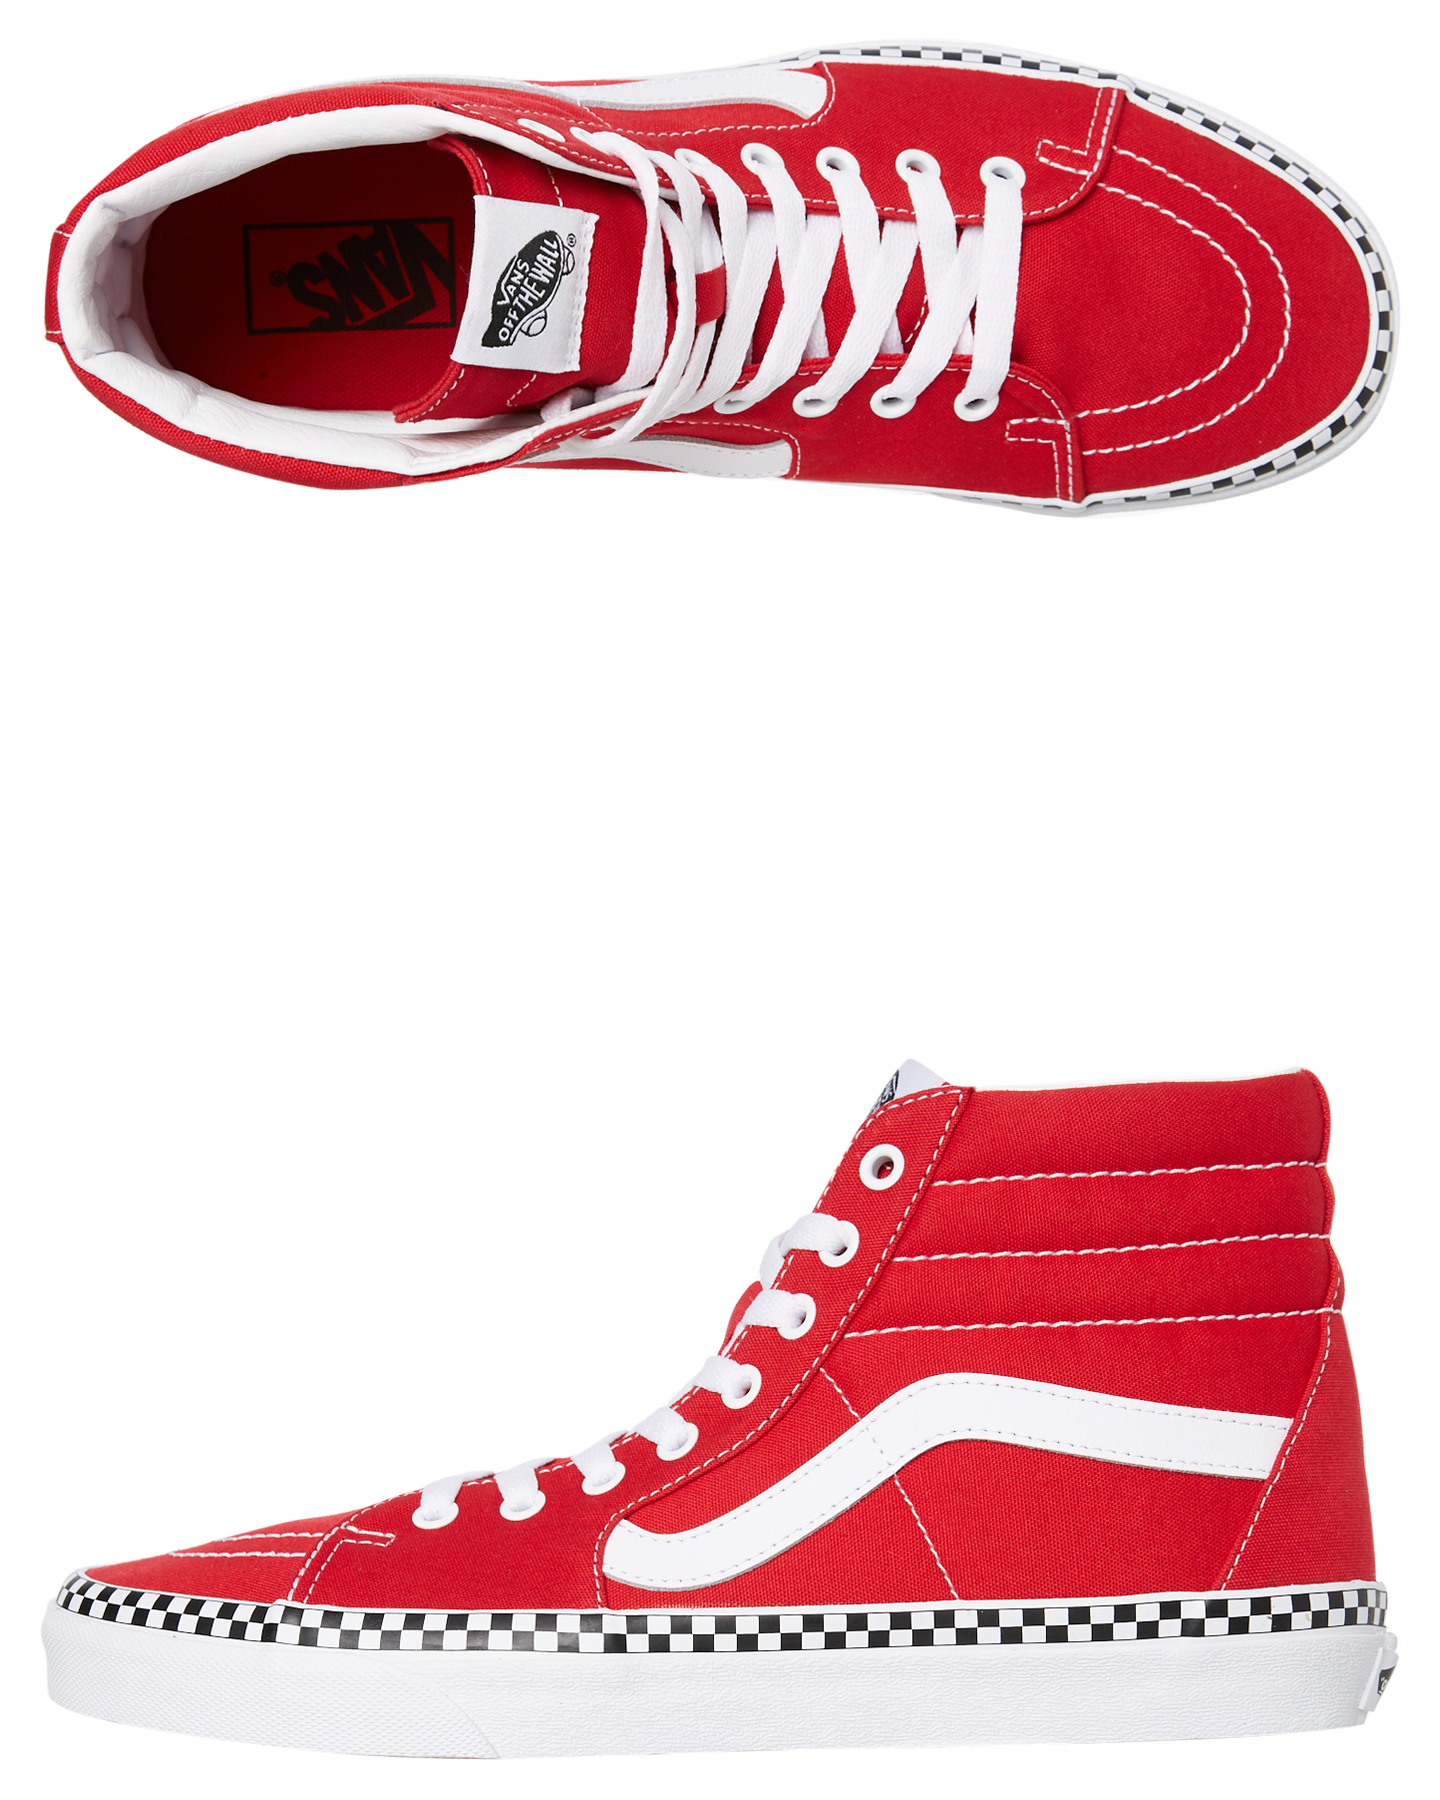 Vans Womens Sk8 Hi Shoe - Red | SurfStitch Red Vans Shoes For Girls